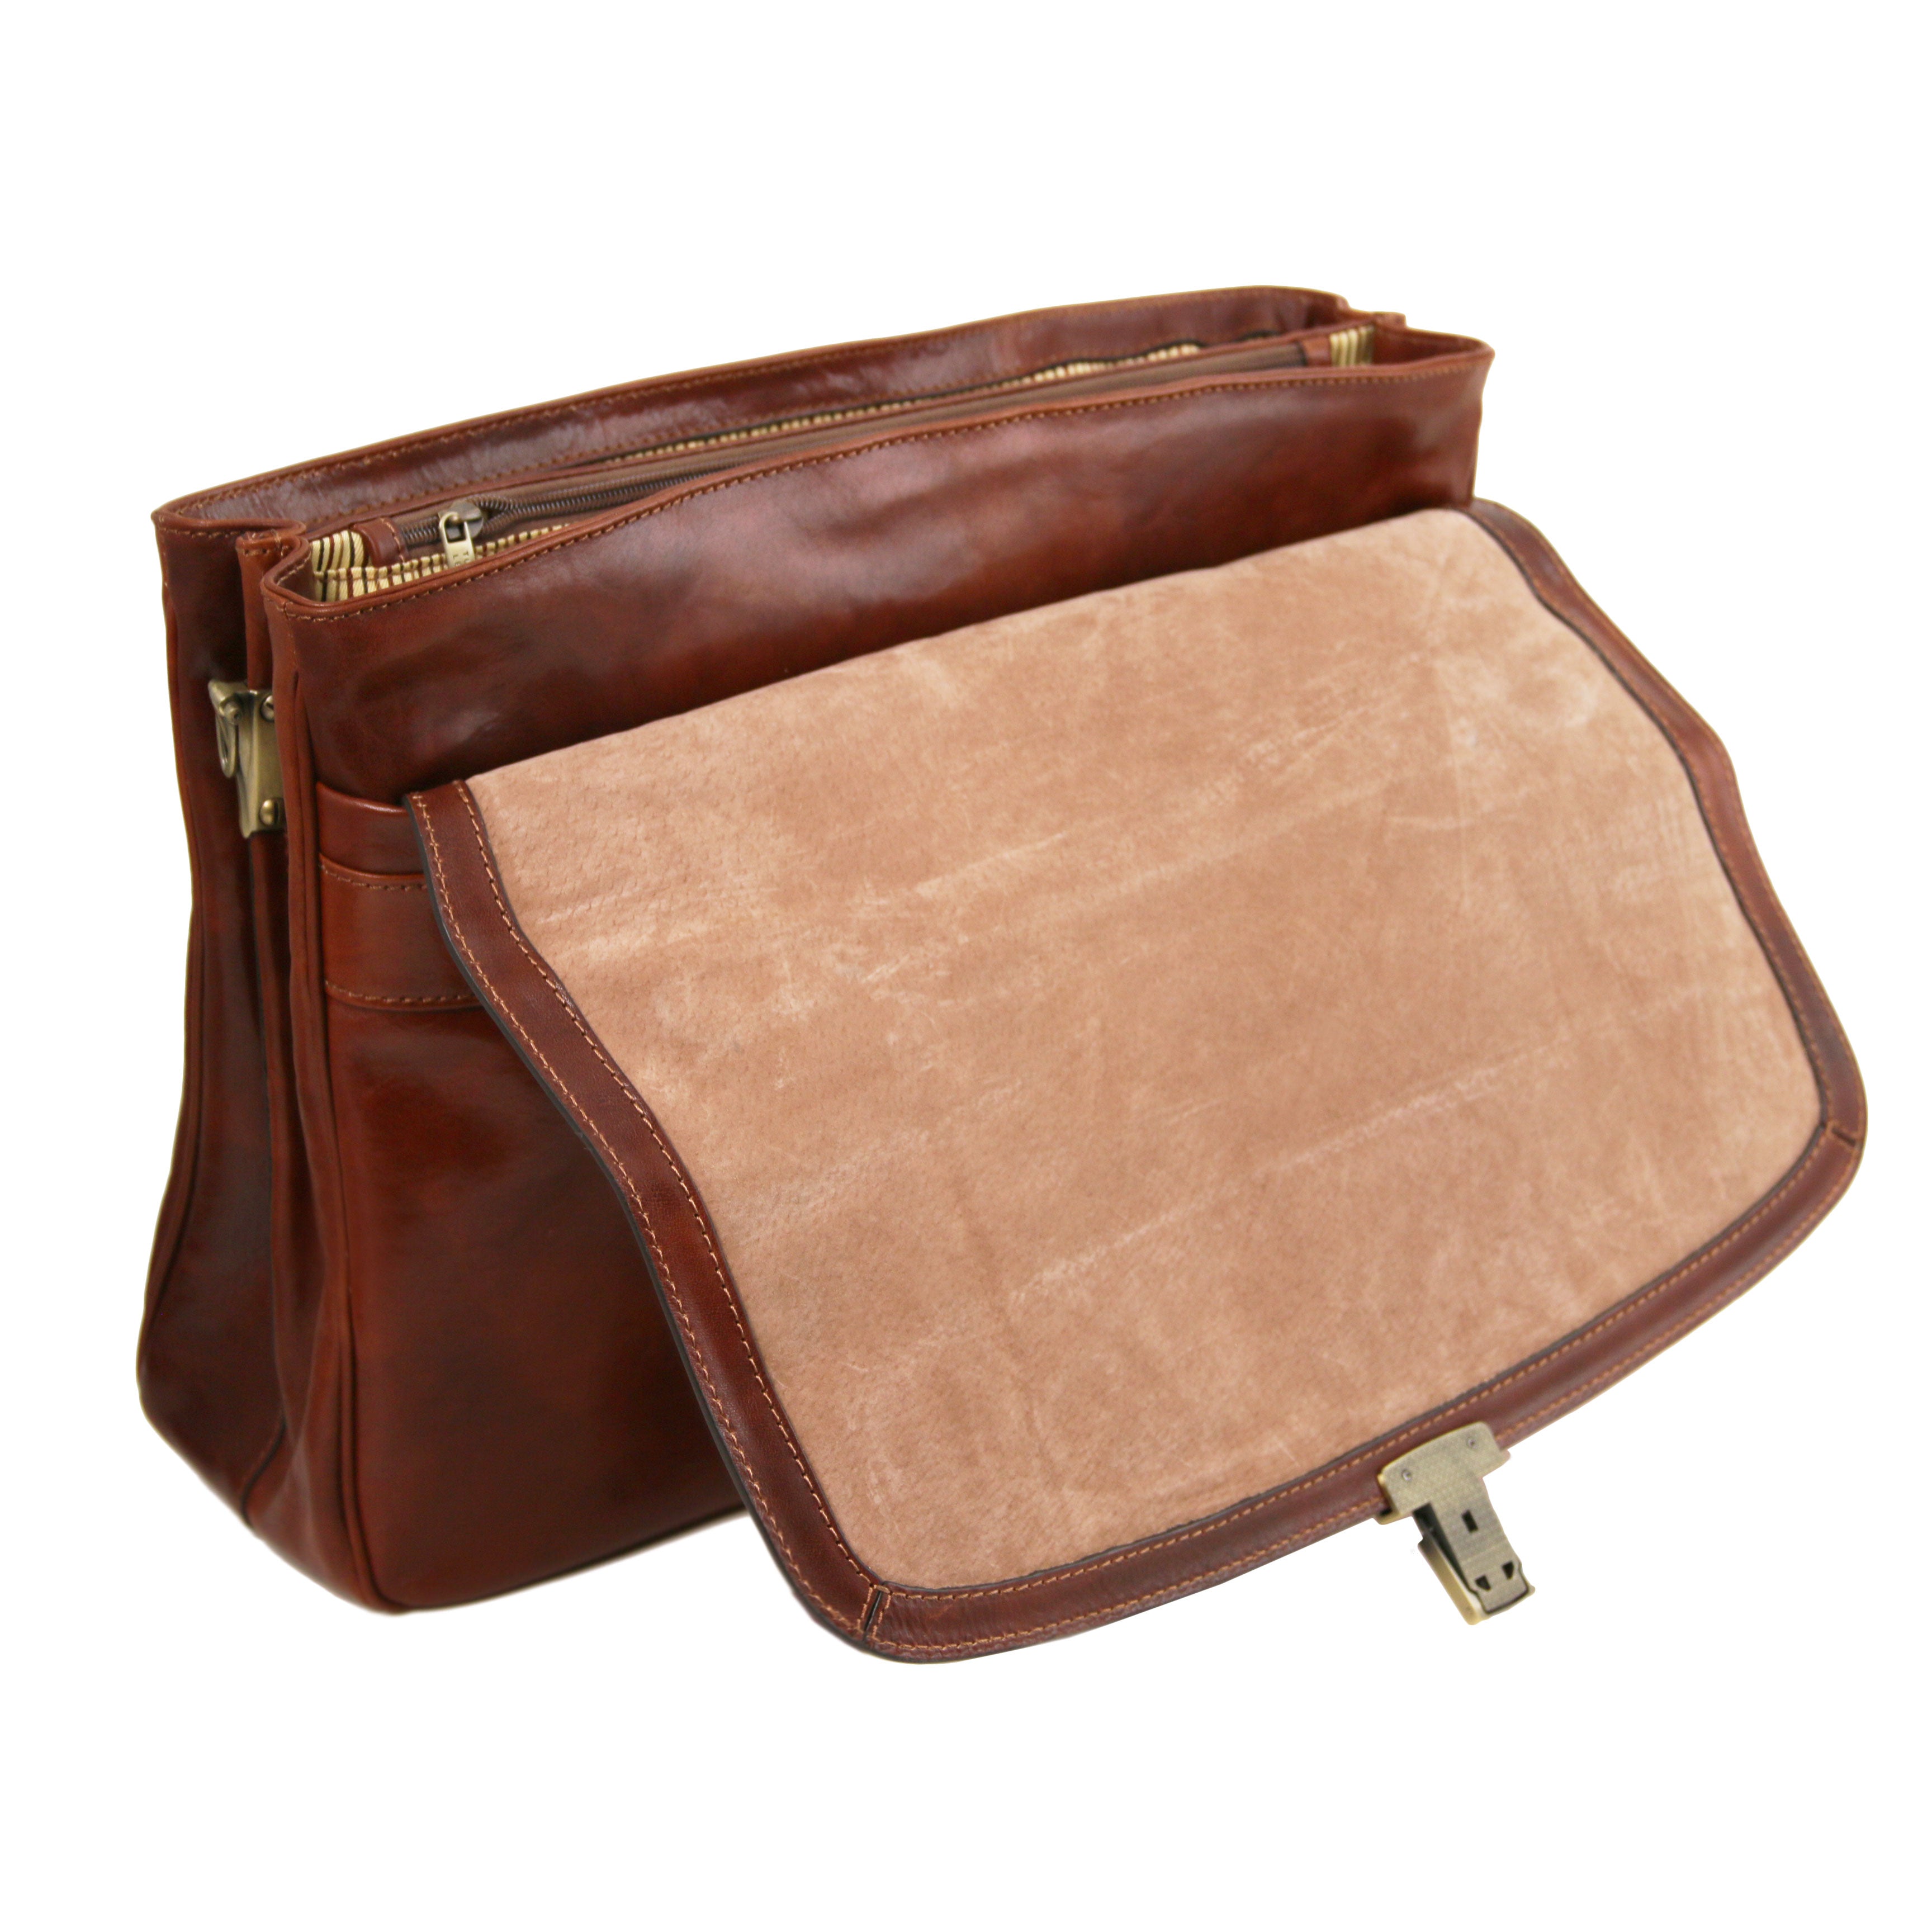 Resväska och Portfölj i Läder Mörkbrun Paket - NewBag4you